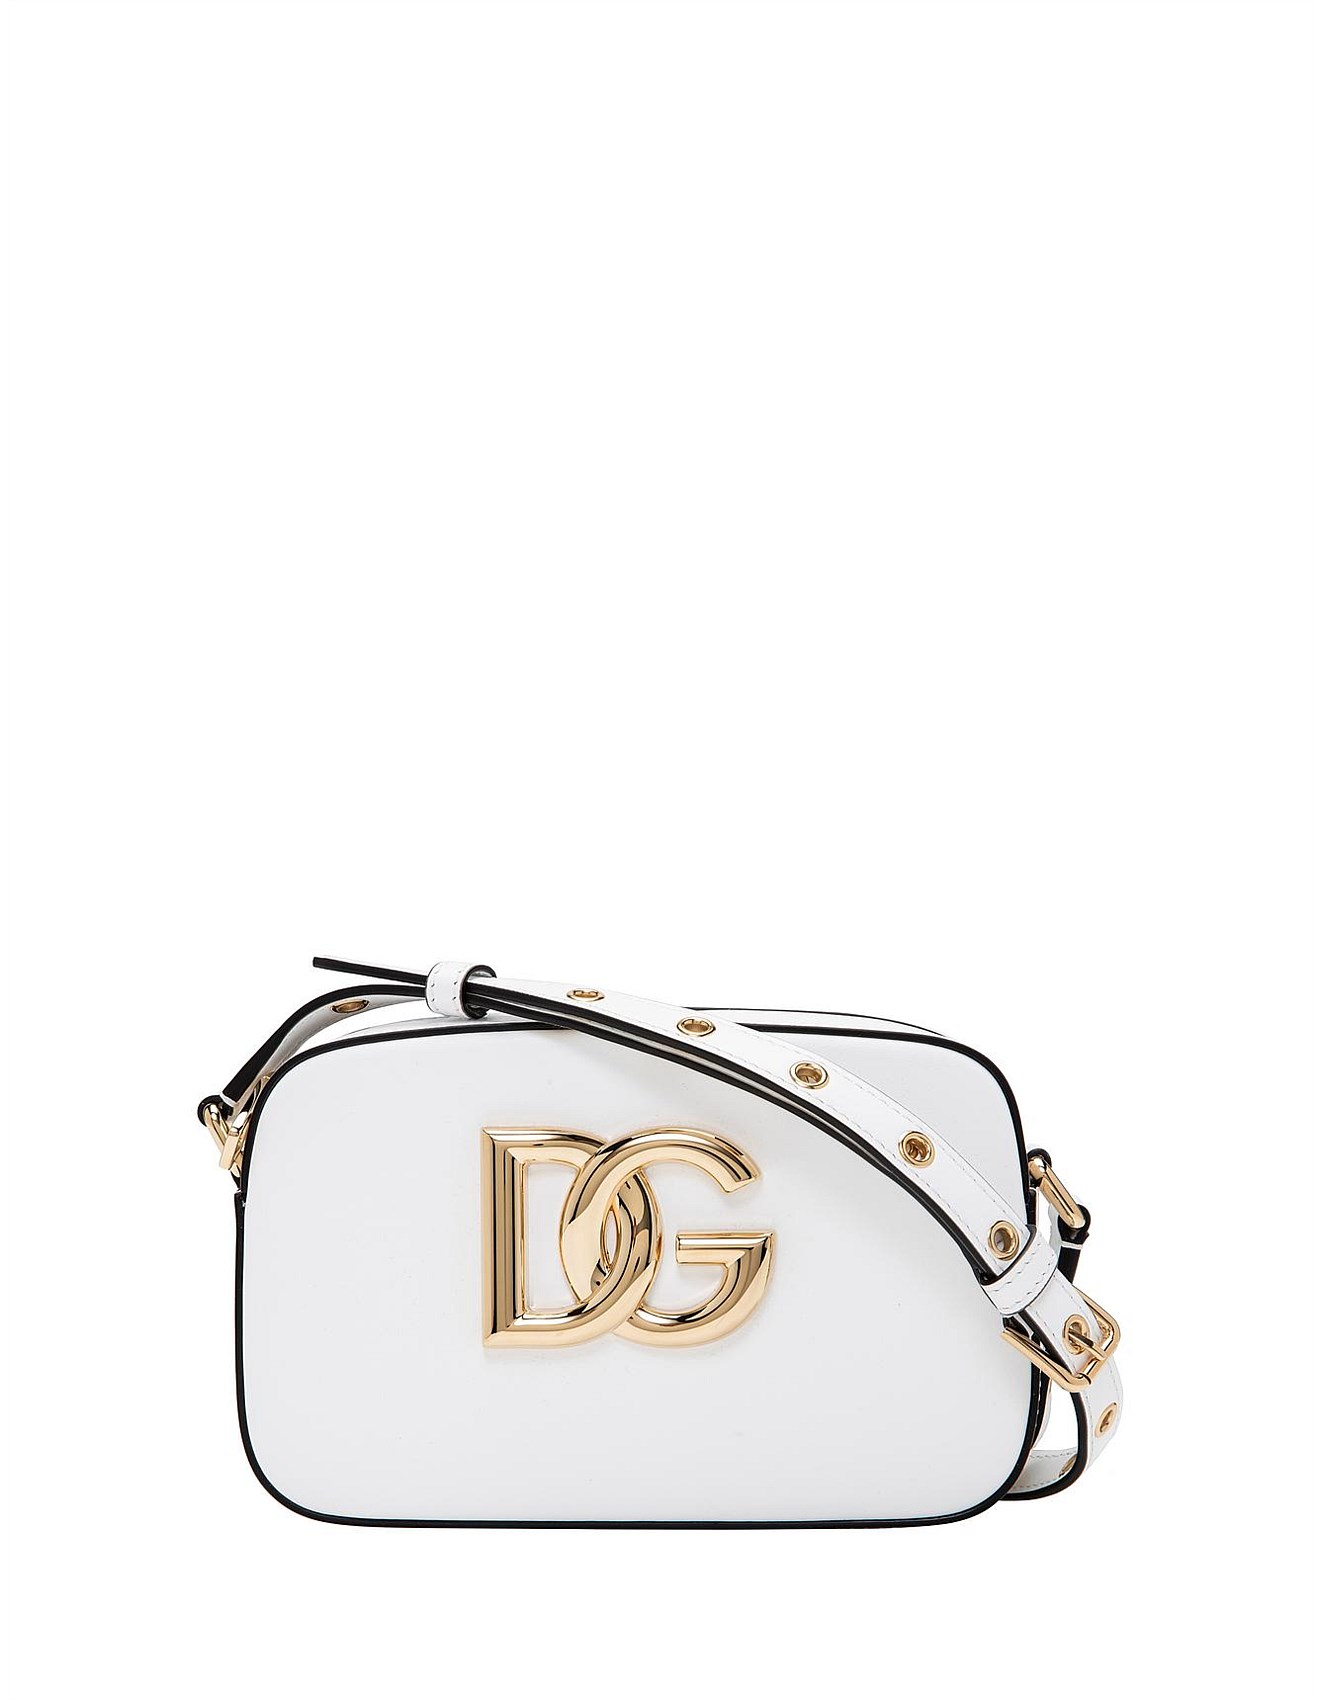 Dolce & Gabbana SHOULDER BAG WITH LOGO